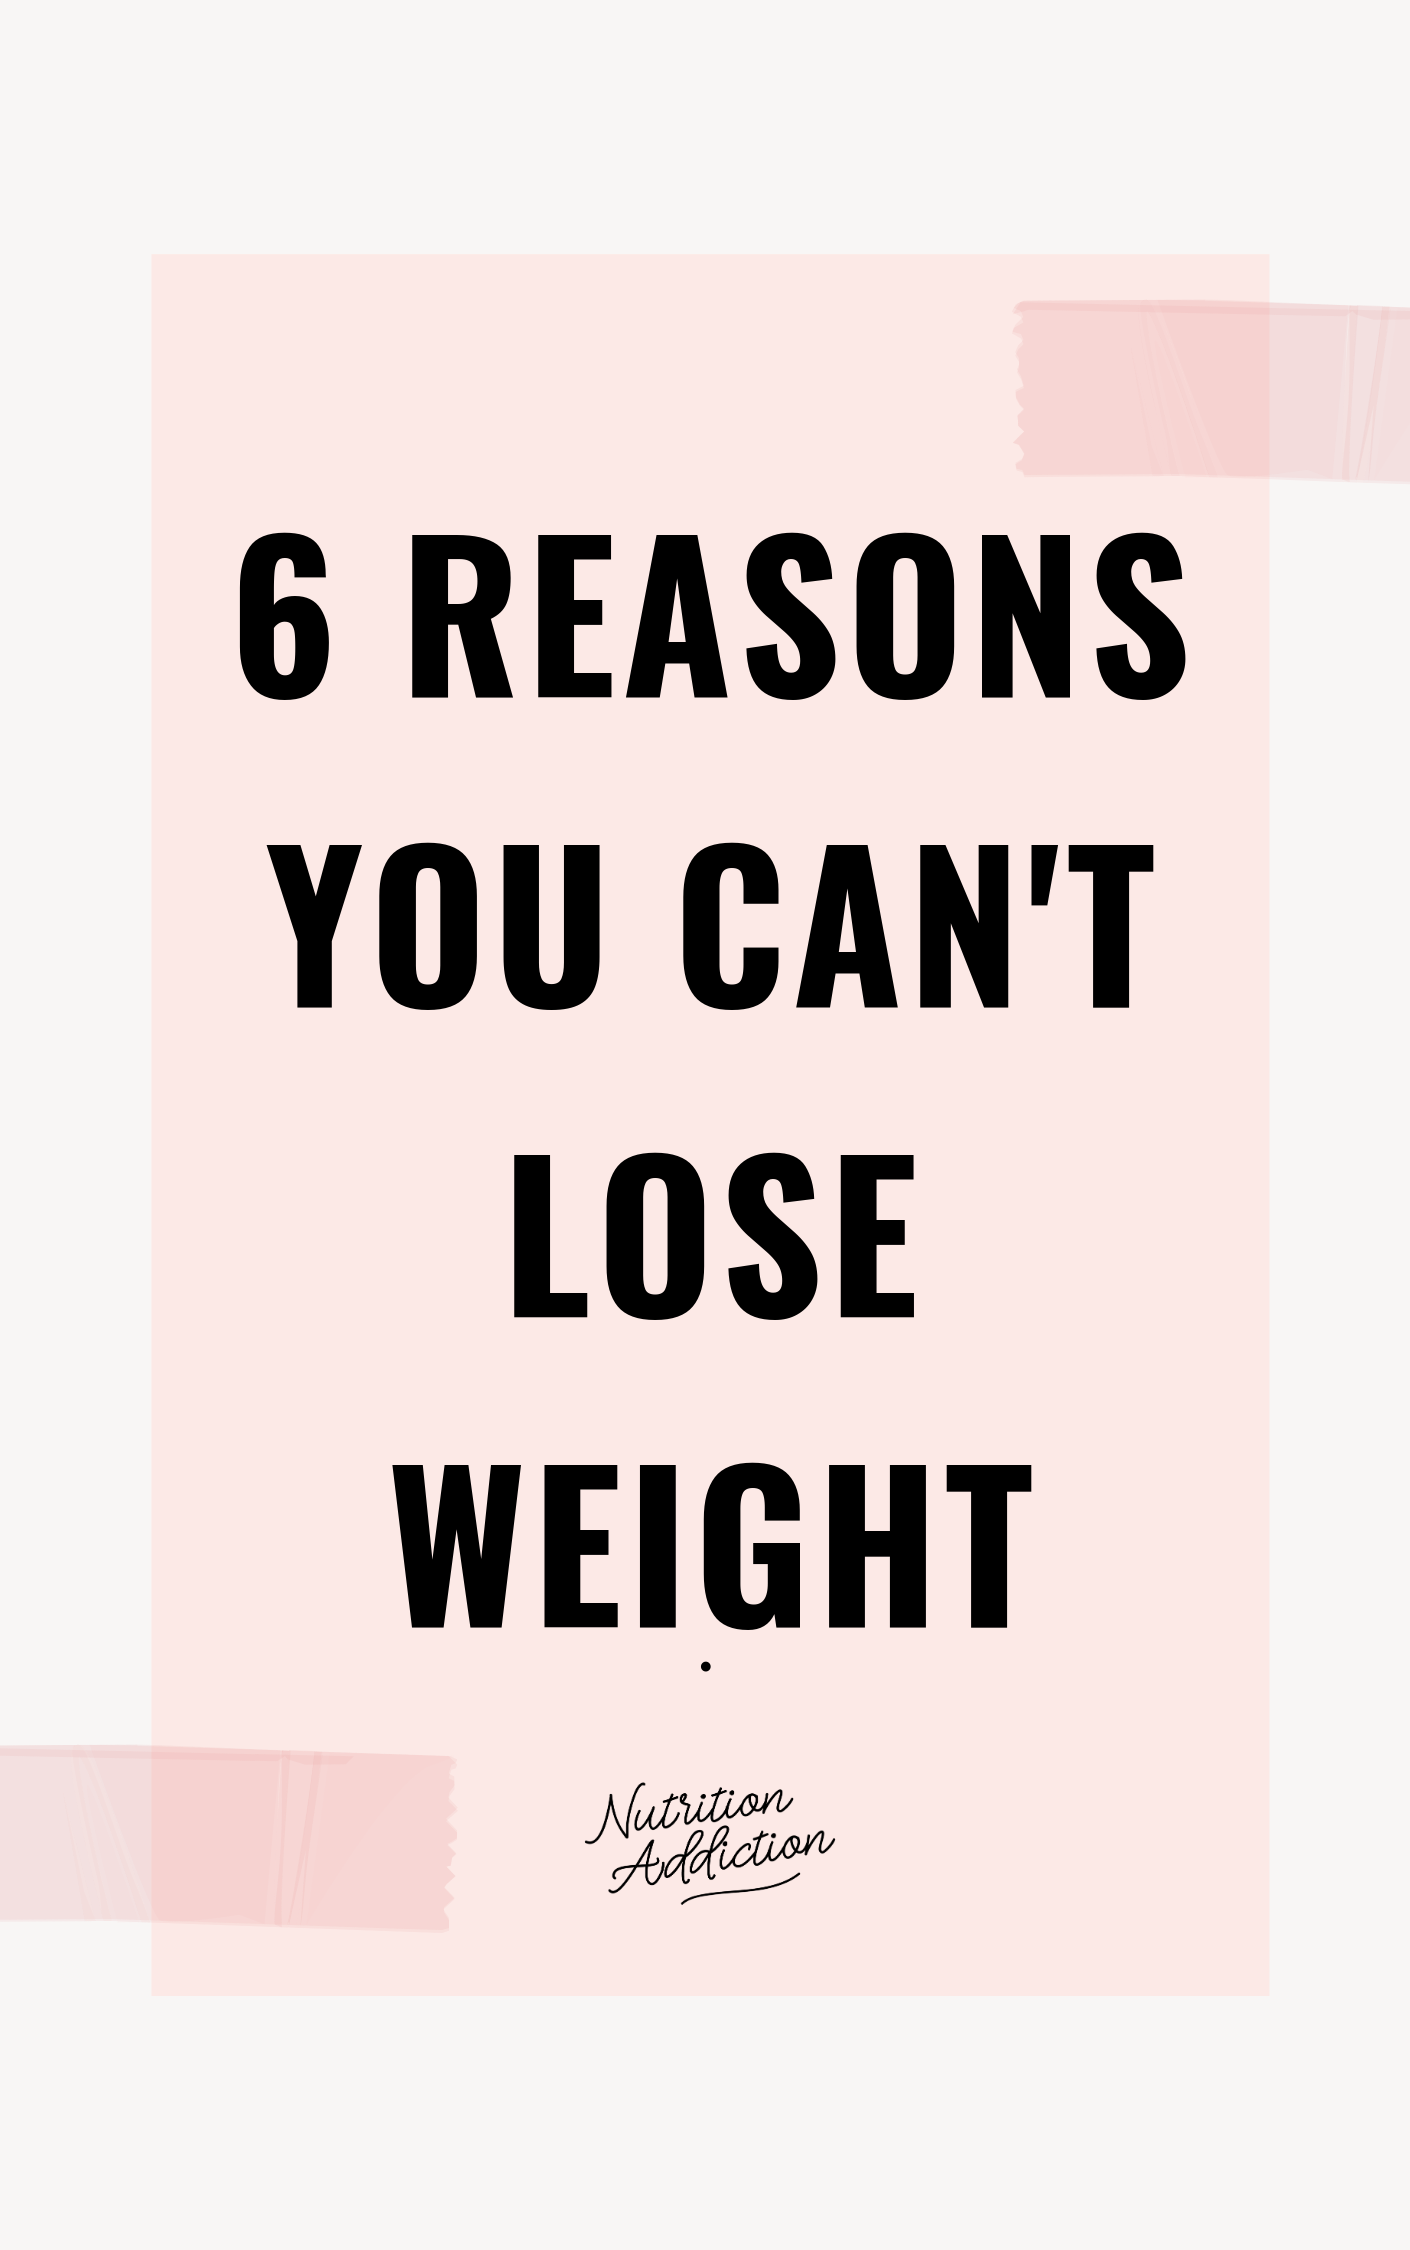 6 reasons (1).png